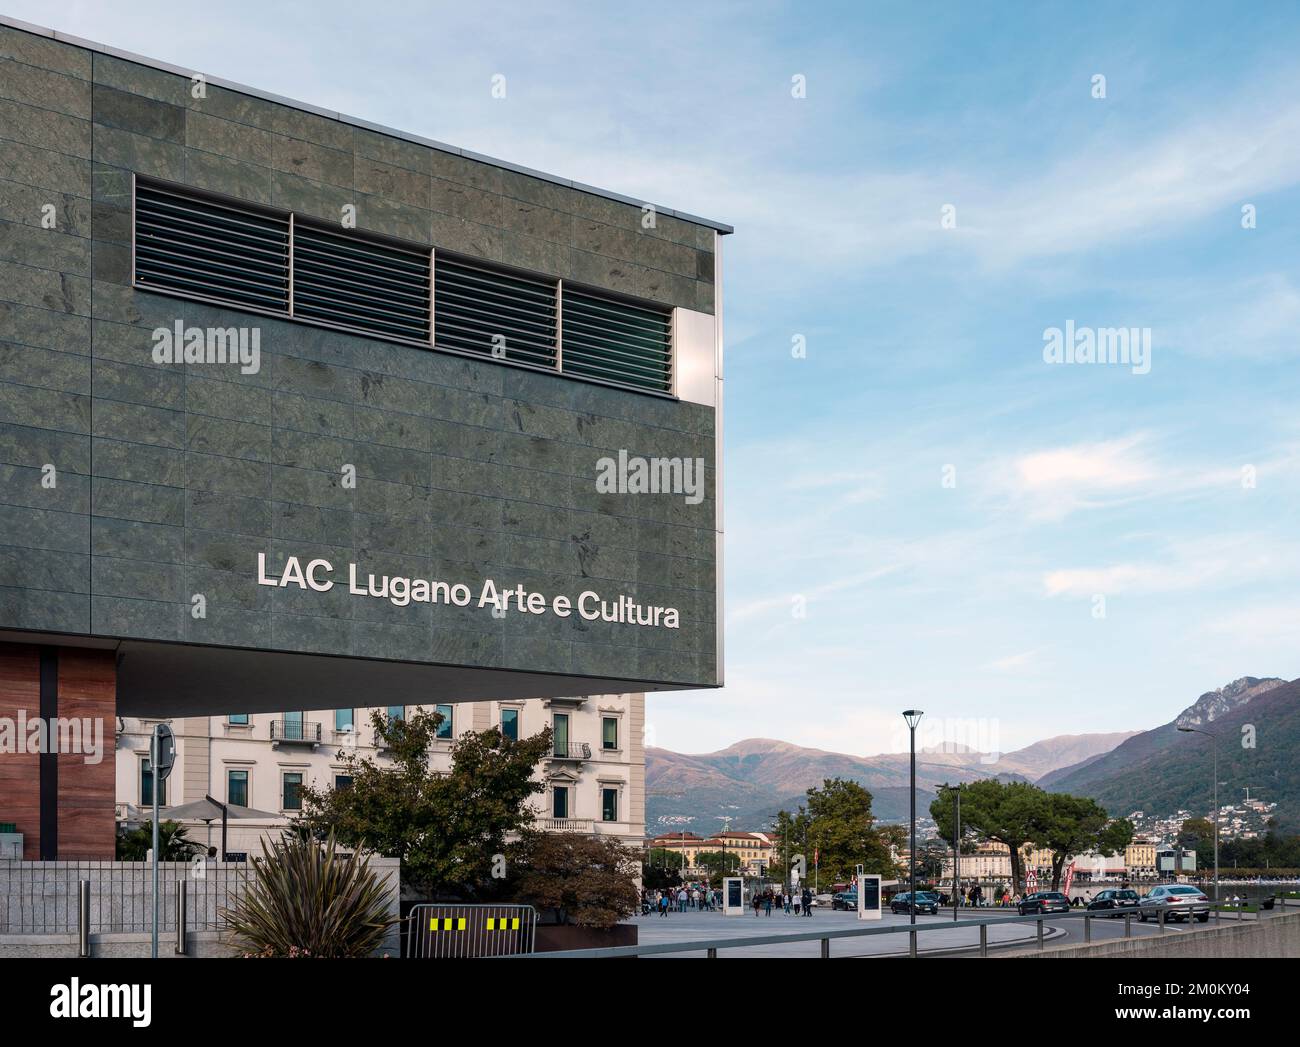 Vista esterna del Museo LAC ('Lugano Arte Cultura'), centro culturale polifunzionale dedicato alla musica e alle arti visive a Lugano, Svizzera Foto Stock